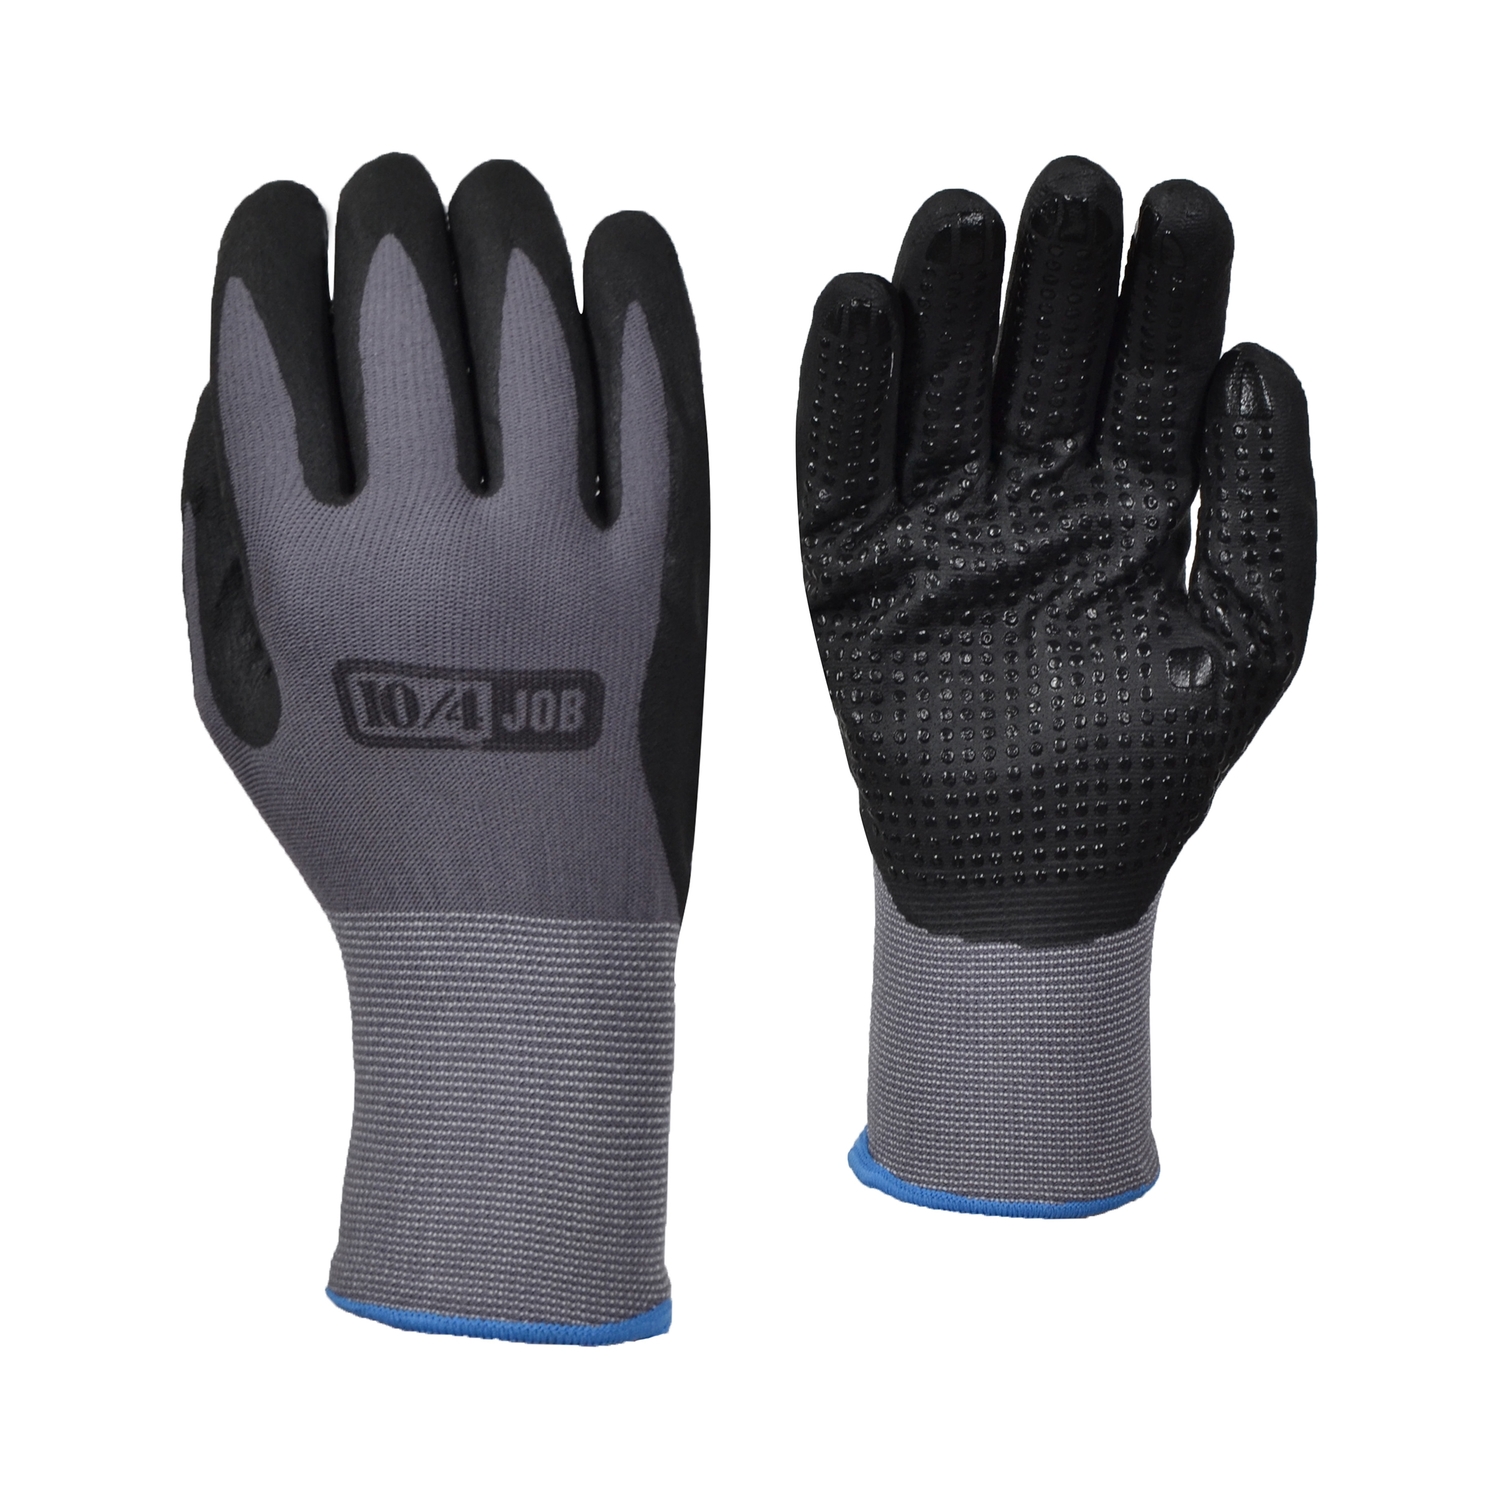 Glove-Nylon/Lycra knit-Nitrile dots